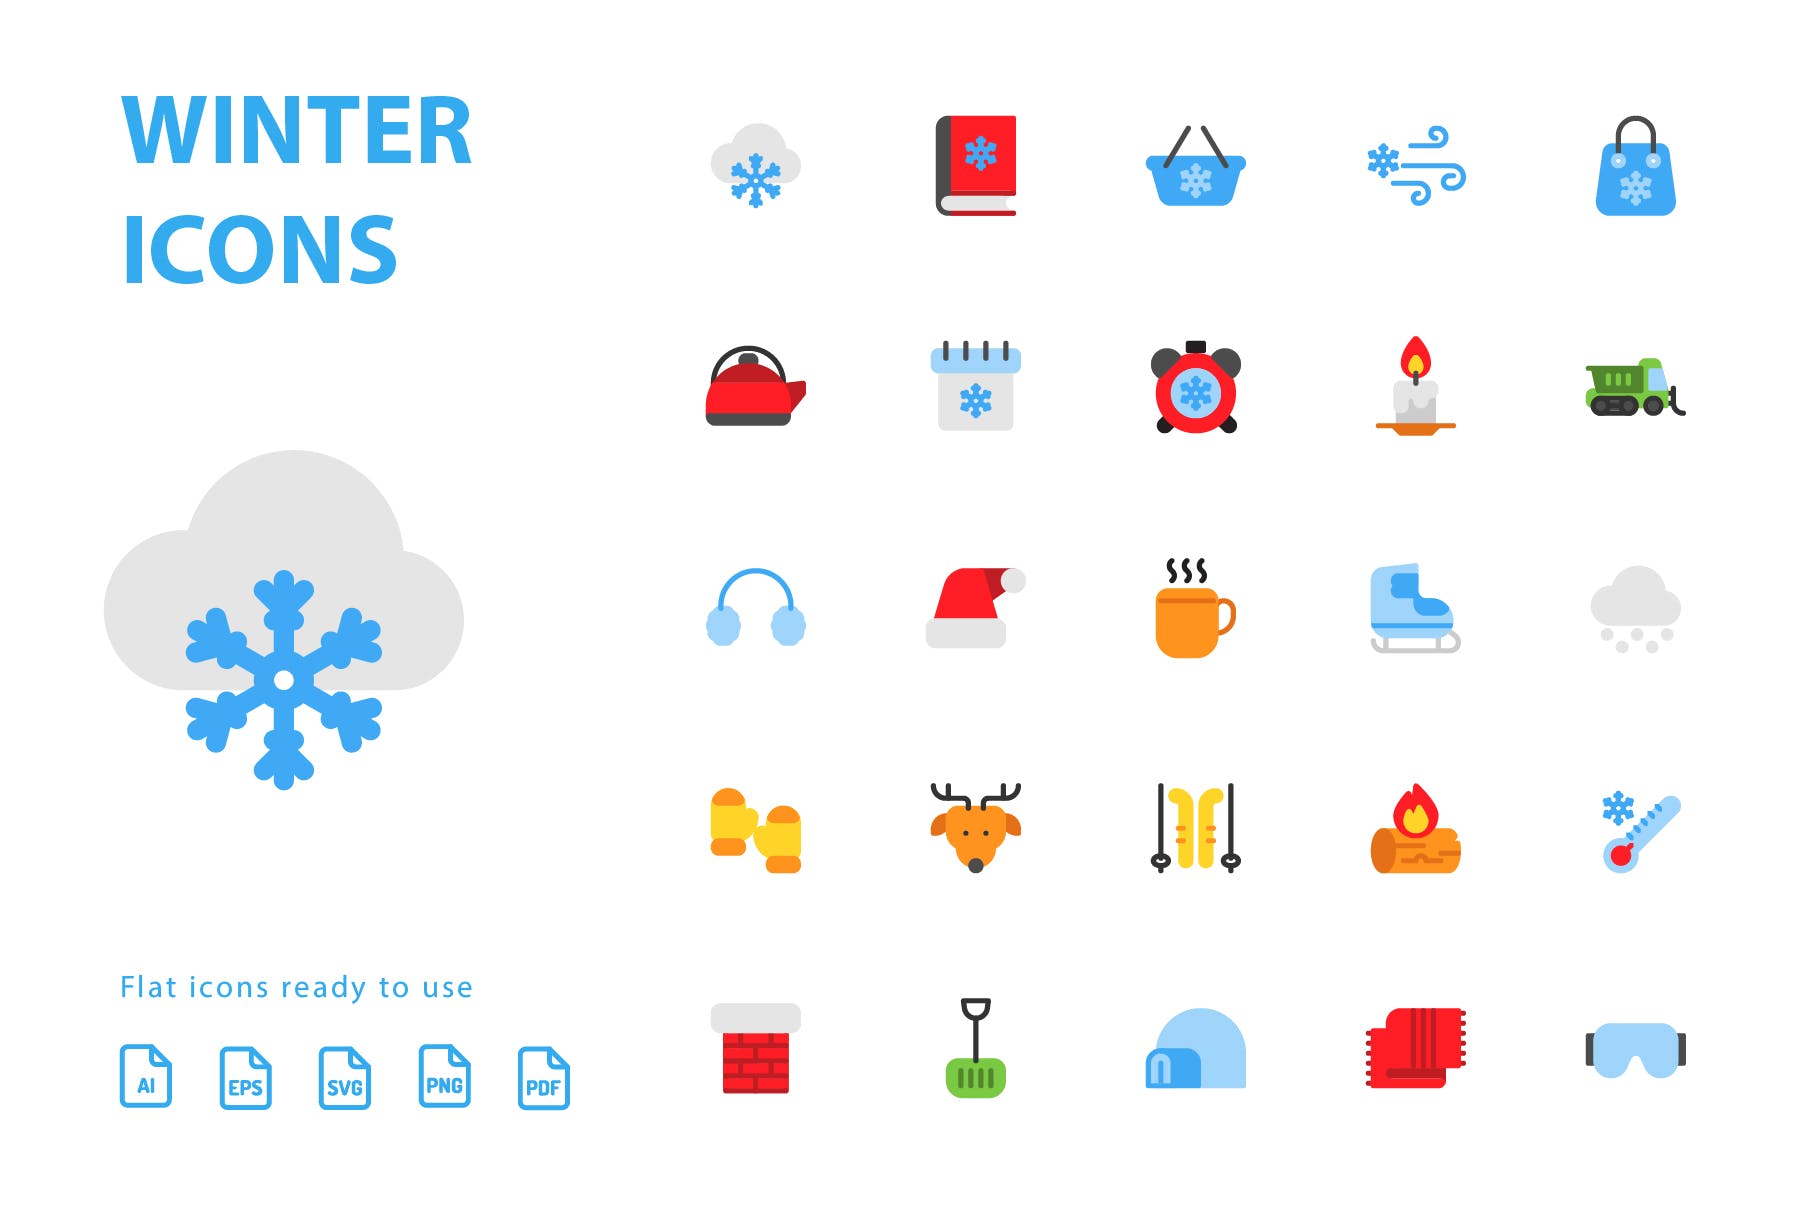 25枚冬天主题扁平设计风格矢量素材库精选图标v2 Winter Flat Icons插图(2)